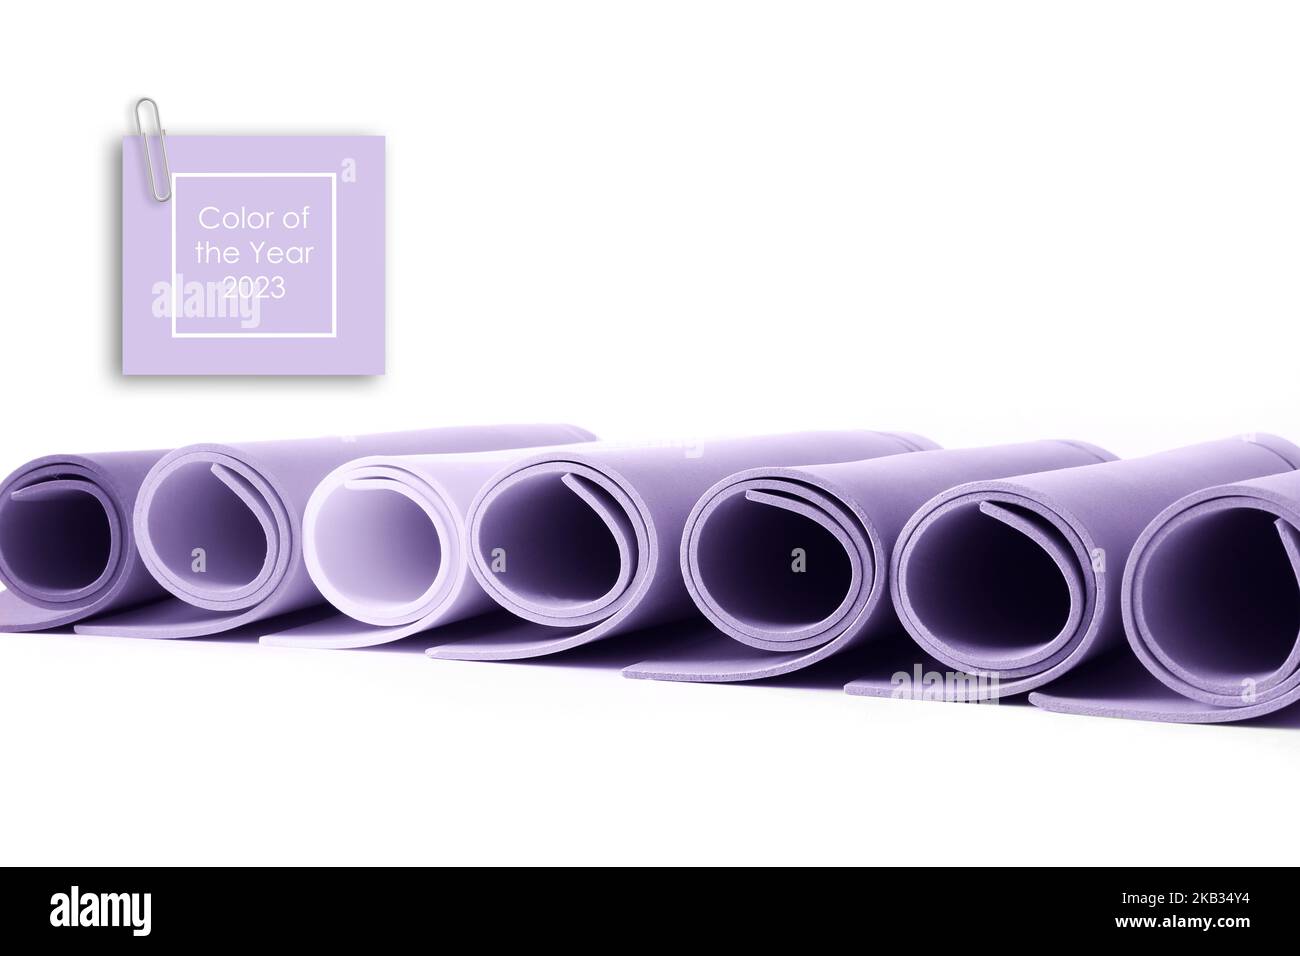 Papierrollen in Lavendelfarbe auf weißem Hintergrund getönt. Konzept der trendigen digitalen Lavendel Farbe. Textfarbe des Jahres 2023 Stockfoto